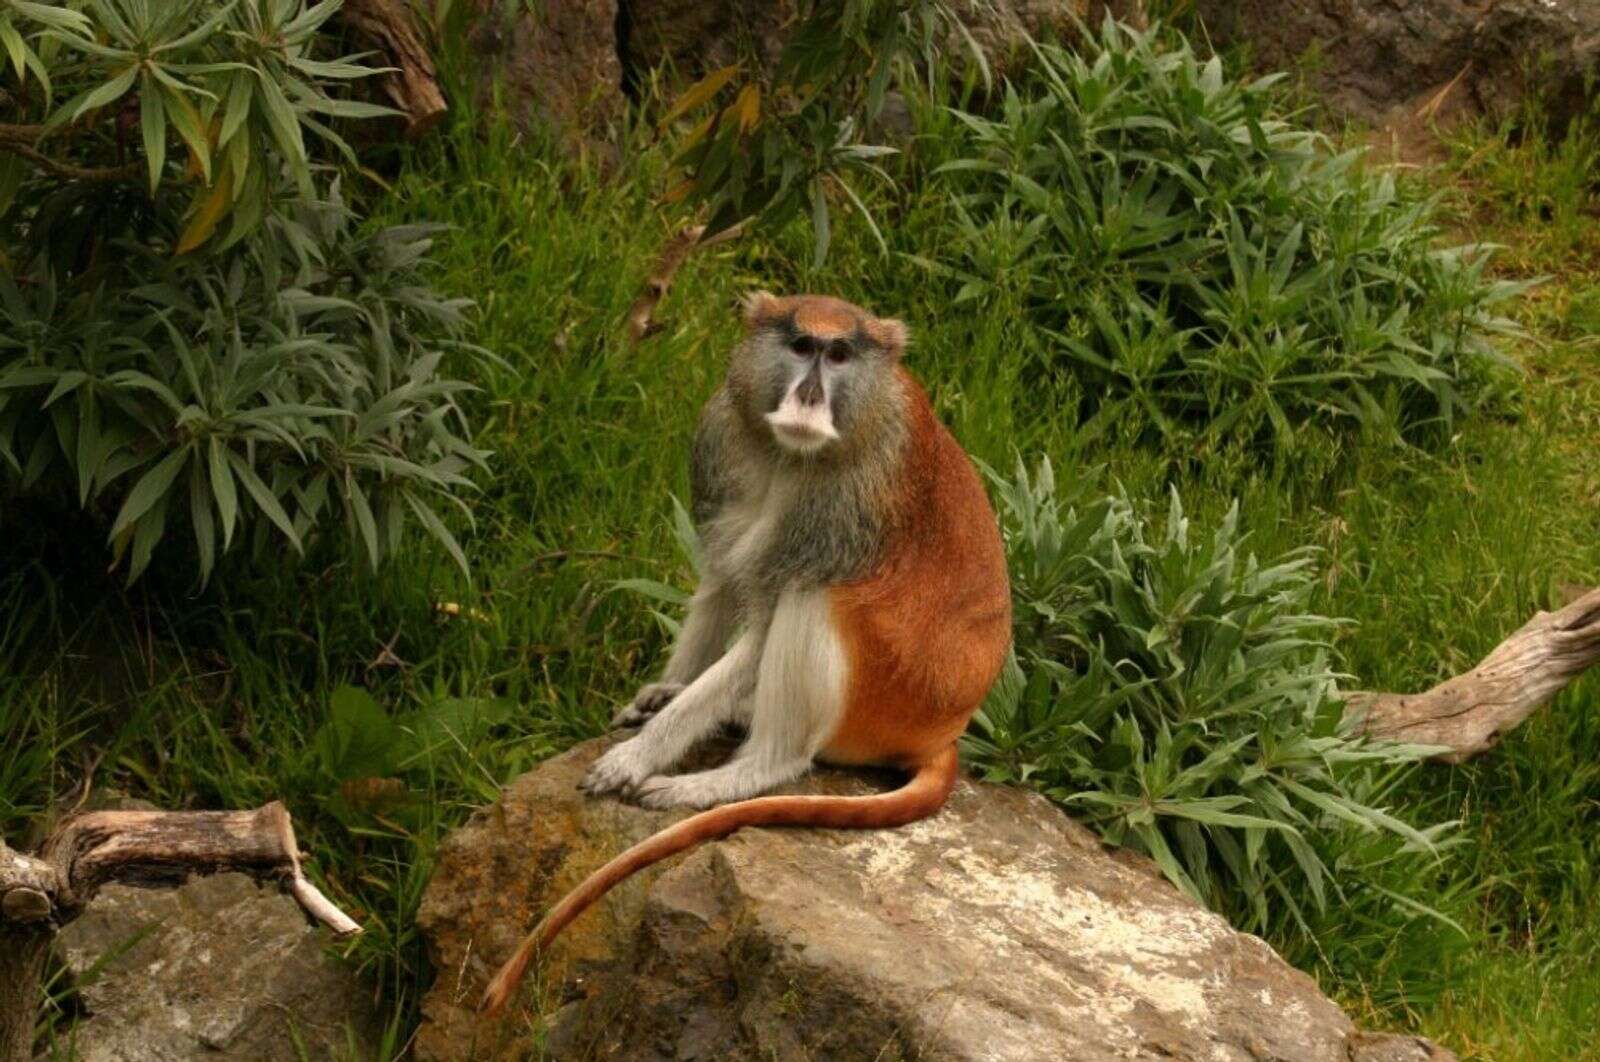 Capturan en Rincón un mono que cosechas – NotiCel – La verdad como es – Noticias Puerto – NOTICEL